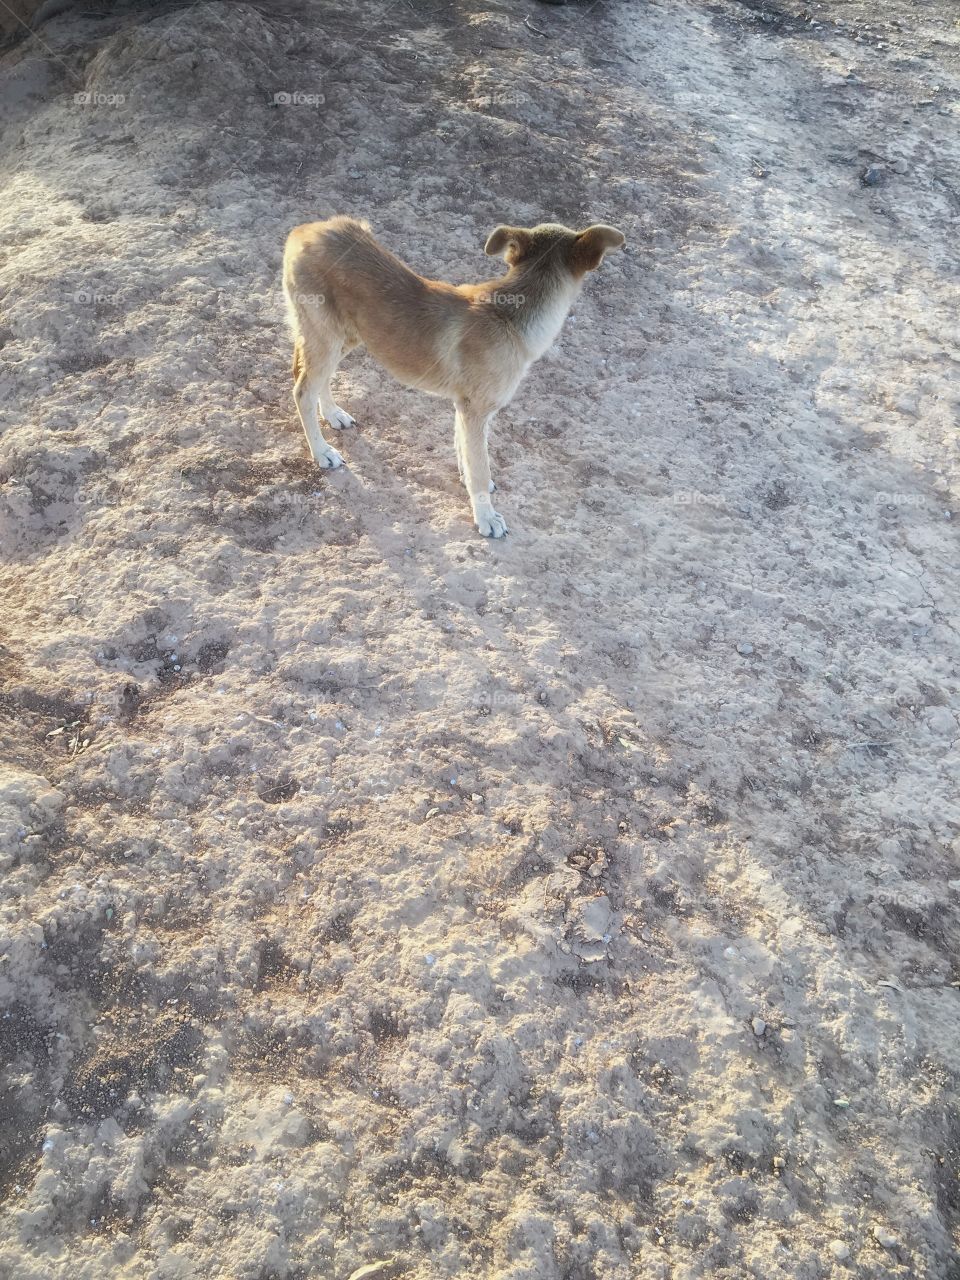 Dog in the desert 